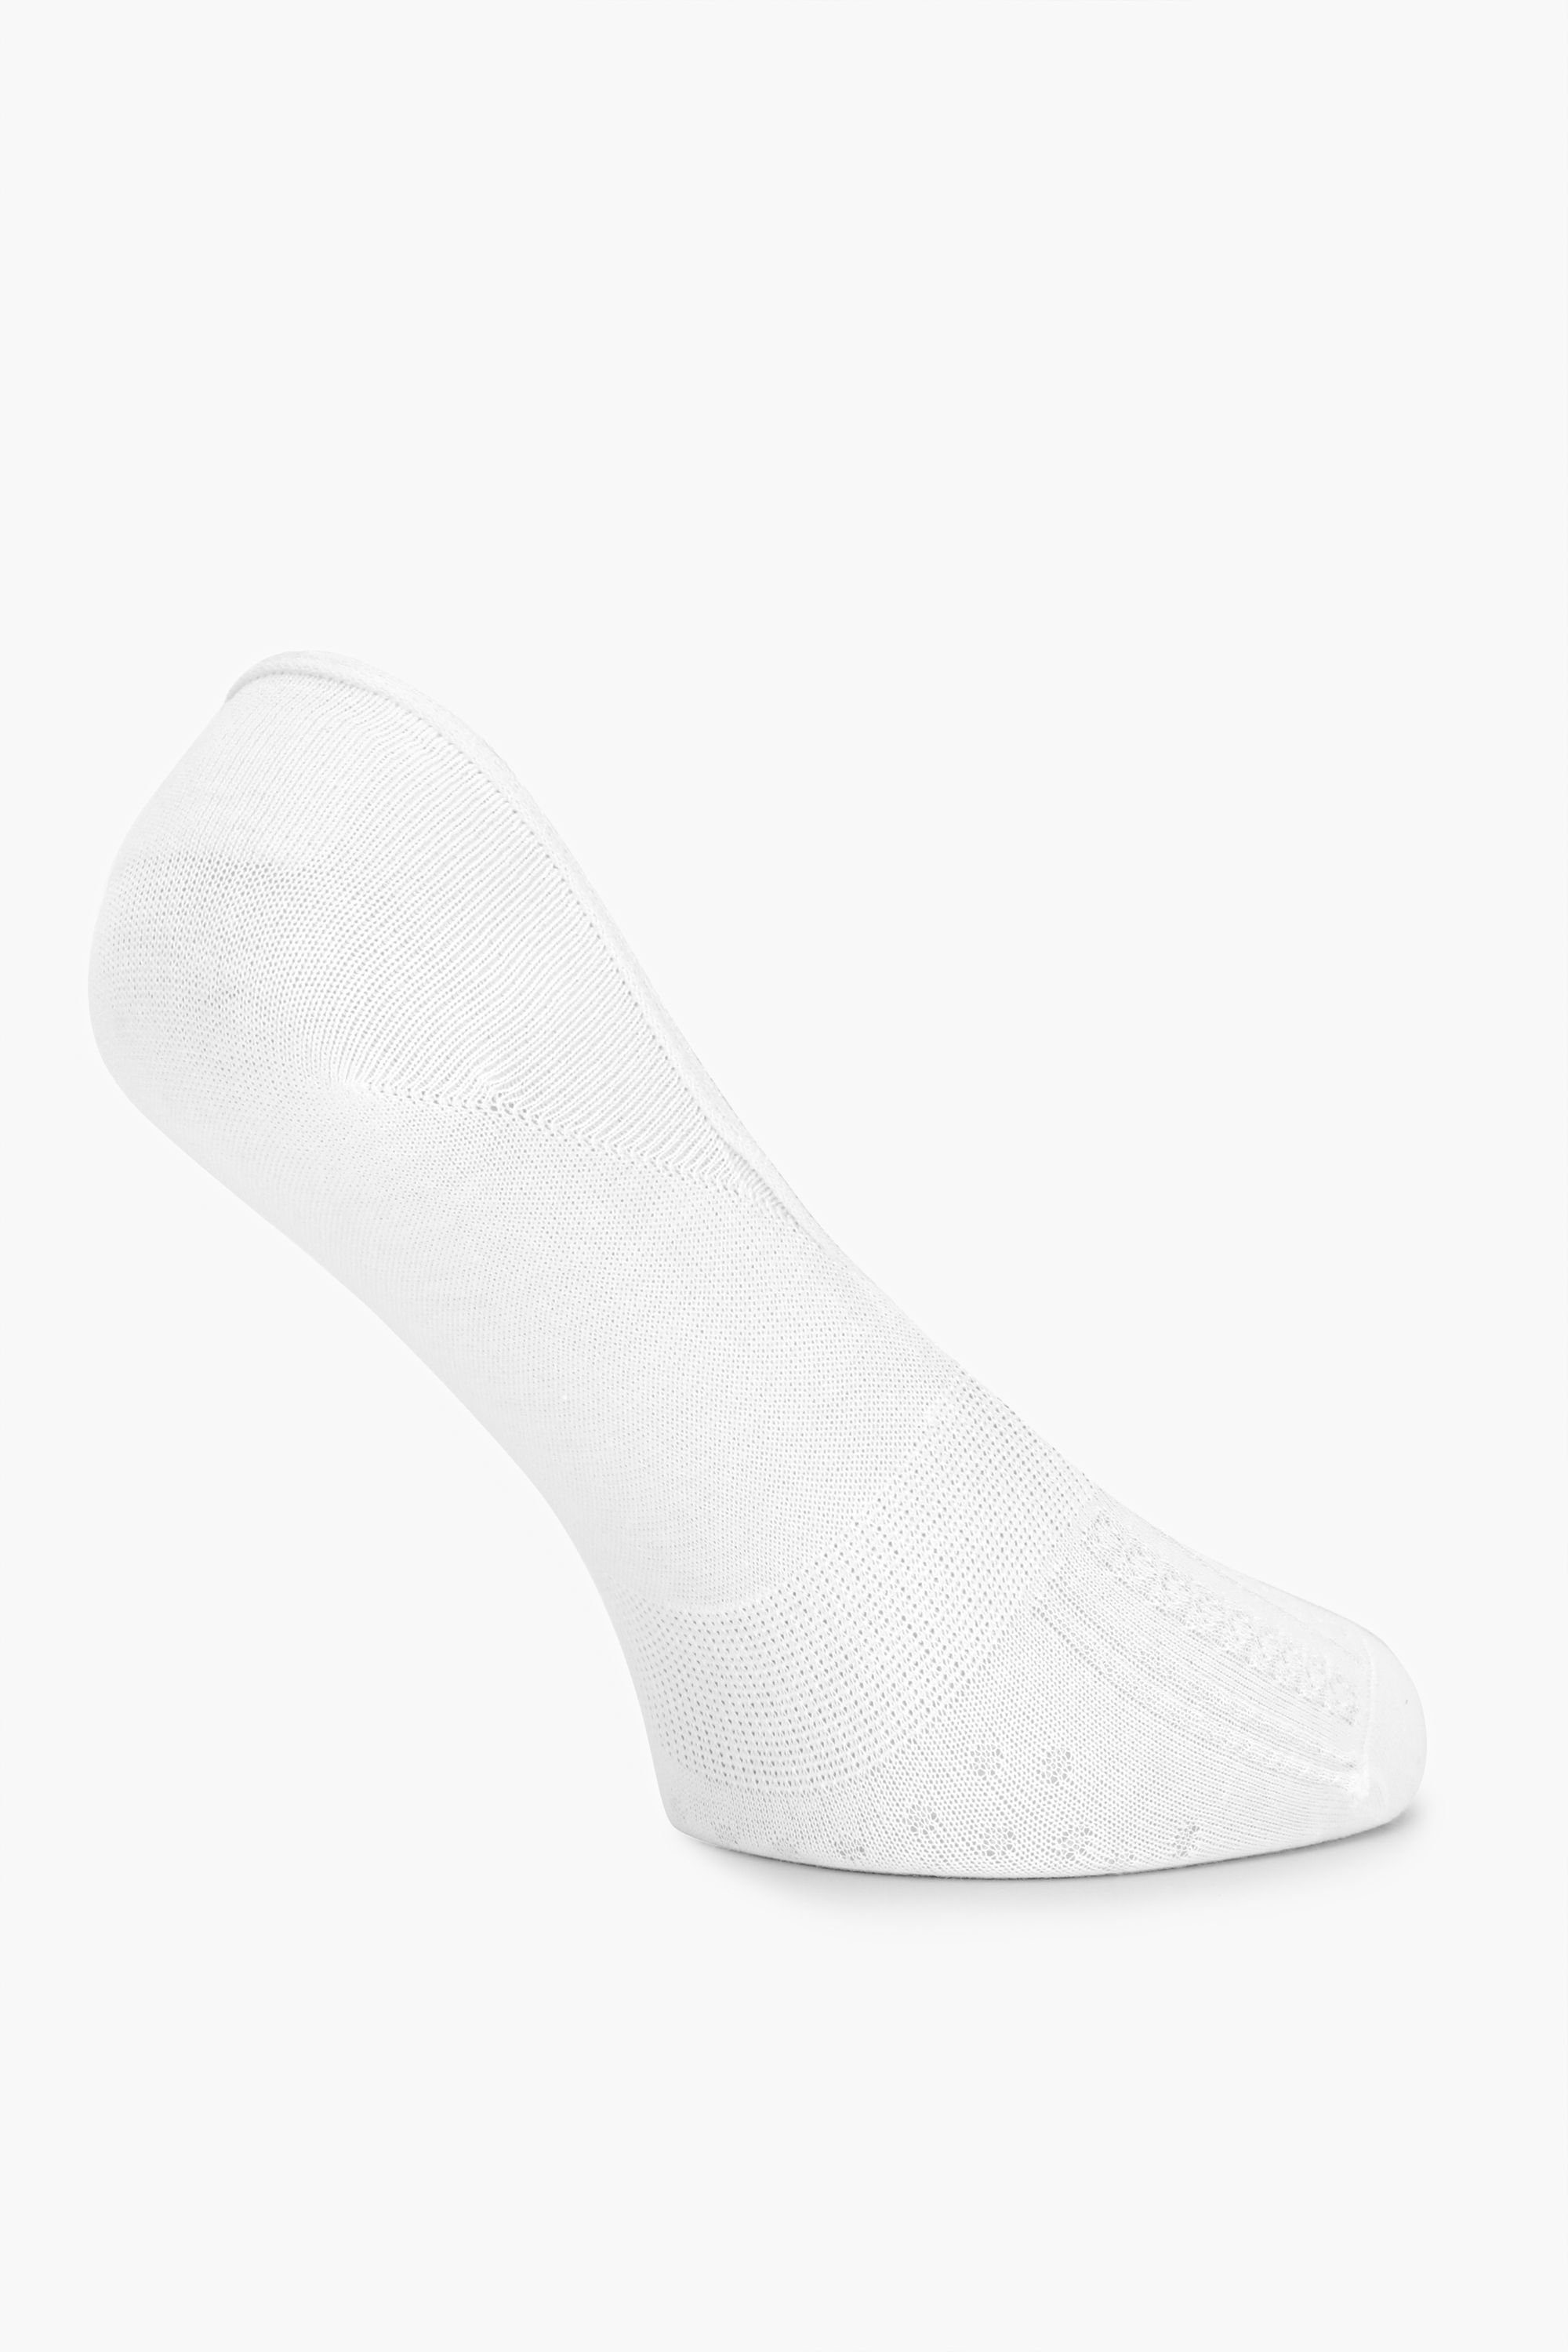 Socken Weiß Damen Merry MSGI034 Socken Sneaker Style